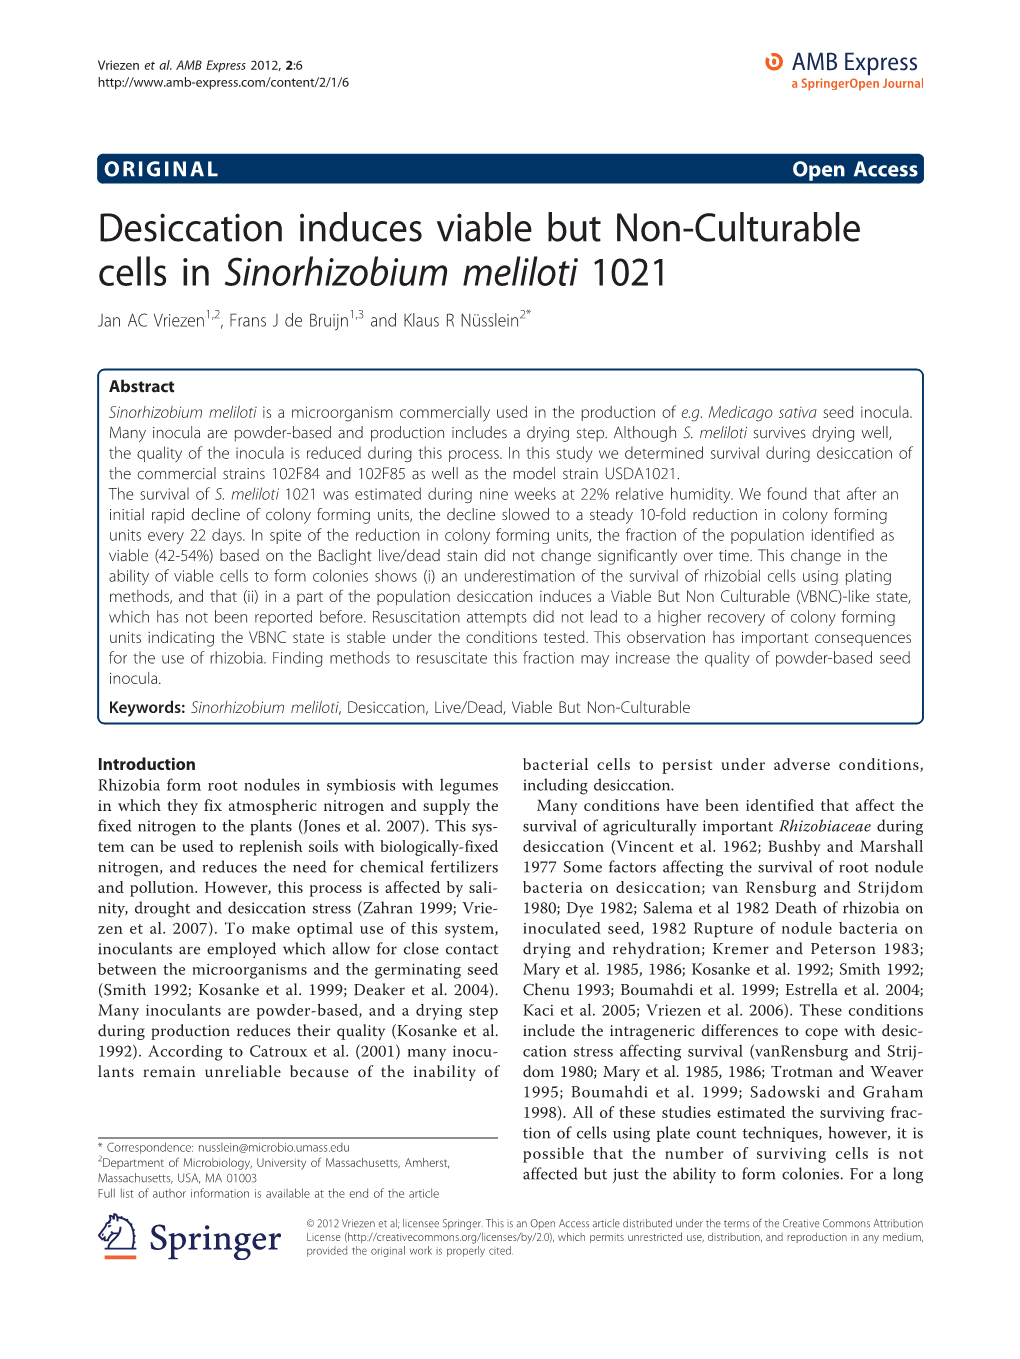 Desiccation Induces Viable but Non-Culturable Cells in Sinorhizobium Meliloti 1021 Jan AC Vriezen1,2, Frans J De Bruijn1,3 and Klaus R Nüsslein2*